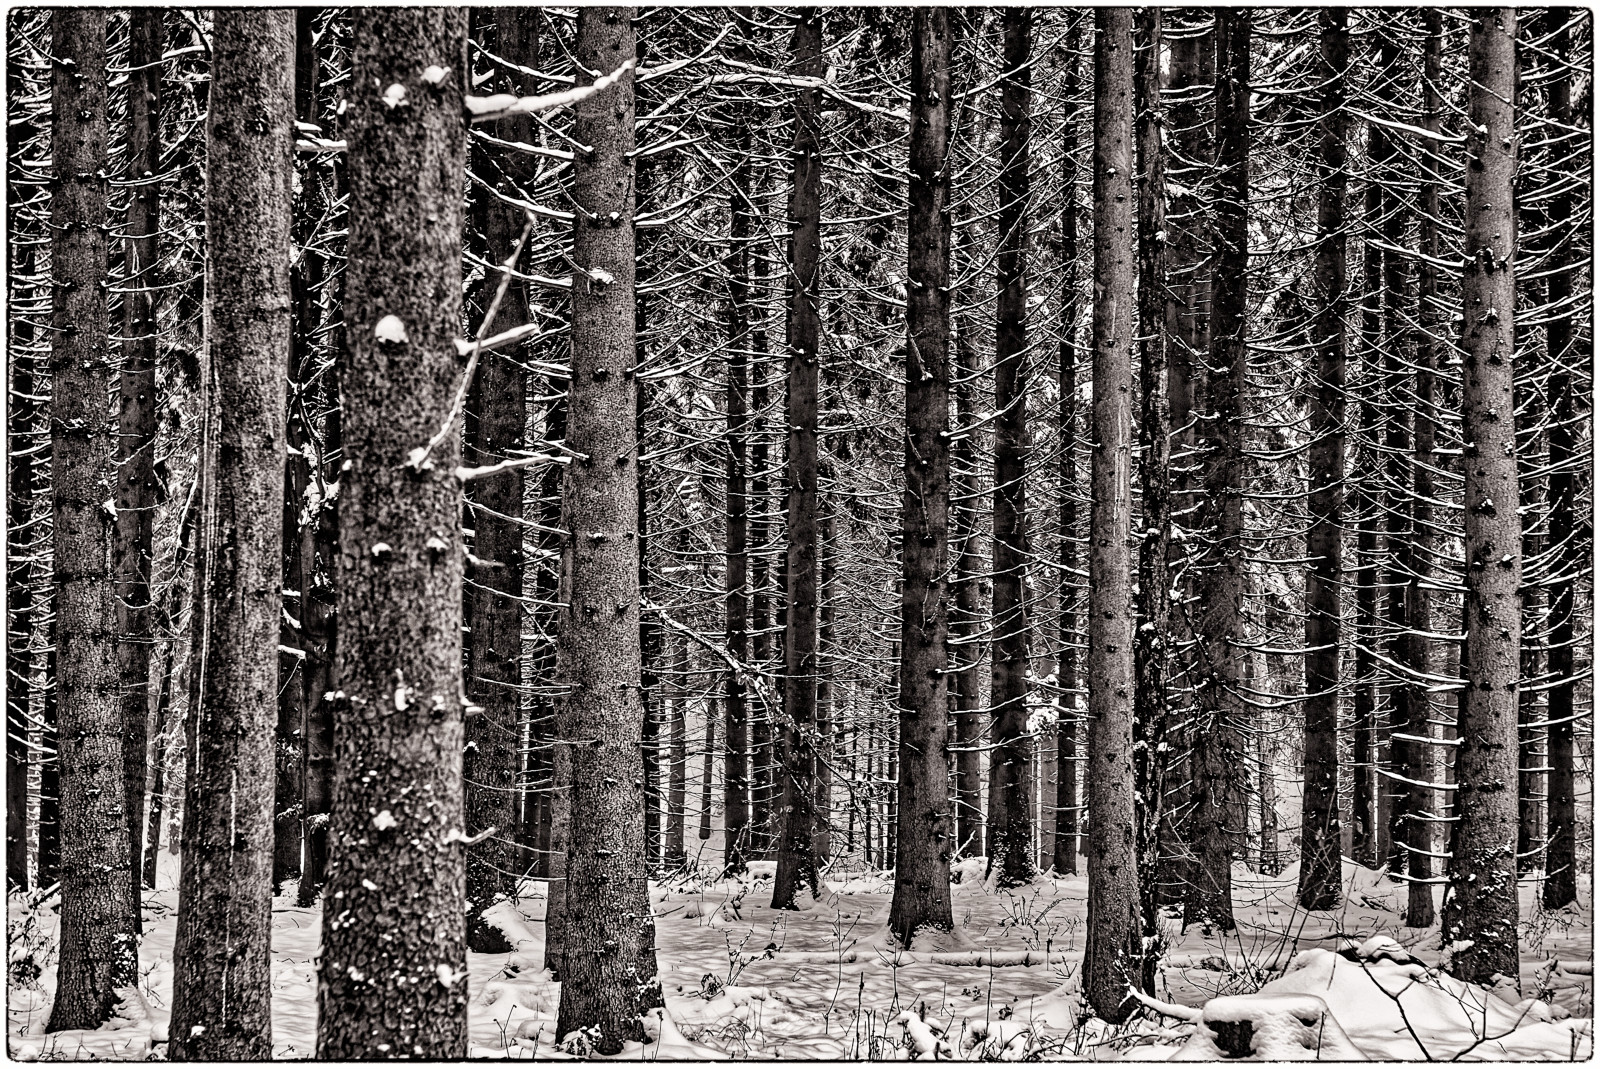 Ein Wald aus eng stehenden NadelBäumen auf SchneeBoden. Durch den engen BildWinkel des TeleObjektivs sieht man nur die untersten paar Meter der Stämme, sie wirken sehr dicht aneinander gedrängt. Das hat eine starke geometrische Anmutung eines fast regelmäßigen LinienMusters. Die Bäume im VorderGrund haben unten herum keine Äste oder nur sehr kurze, kahle. Nur im HinterGrund erkennt man, dass die Bäume oben Nadeln tragen. Das Foto ist schwarz-weiß mit leicht brauner Tonung.